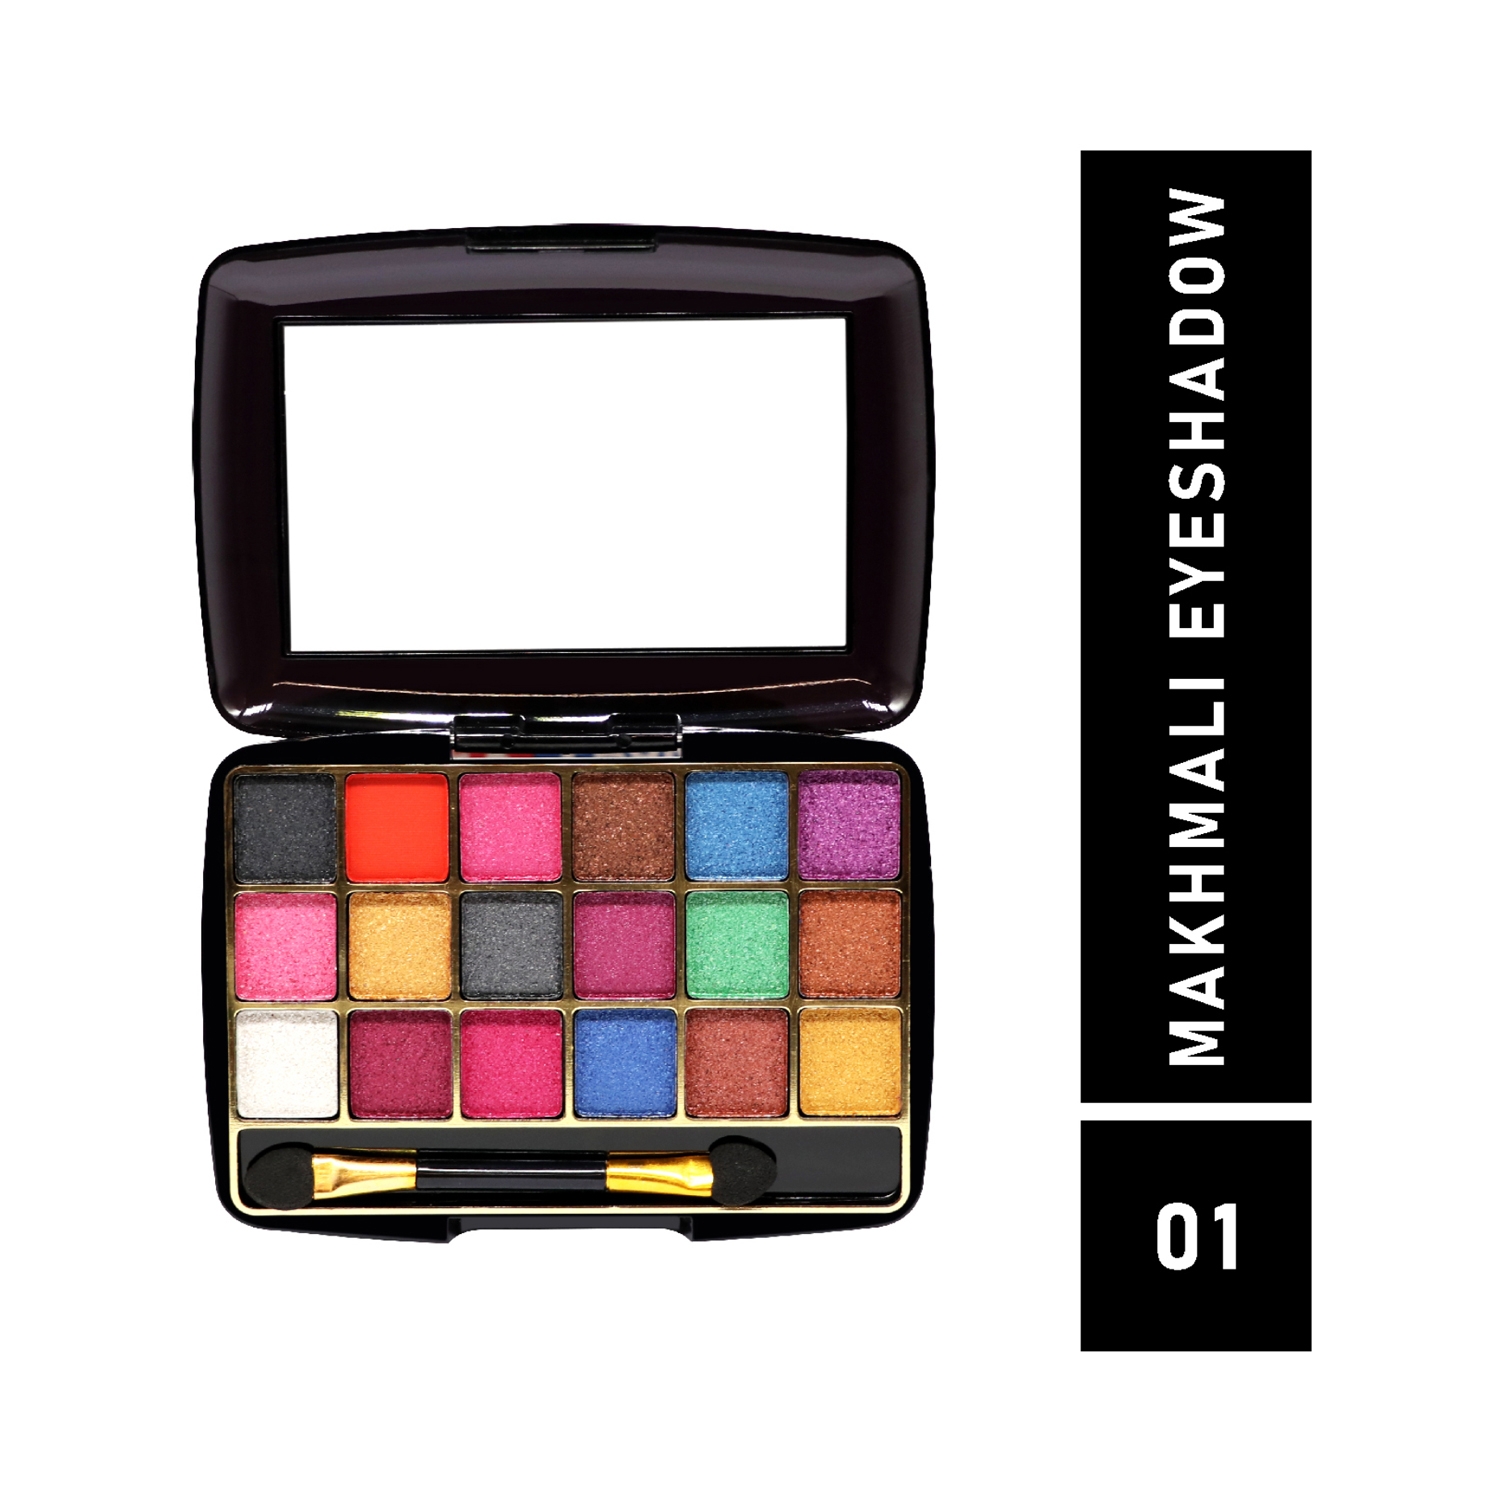 Half N Half | Half N Half 18 Colors Makhmali Eyeshadow With Brush In Makeup Palette - 01 Shade (12.8g)